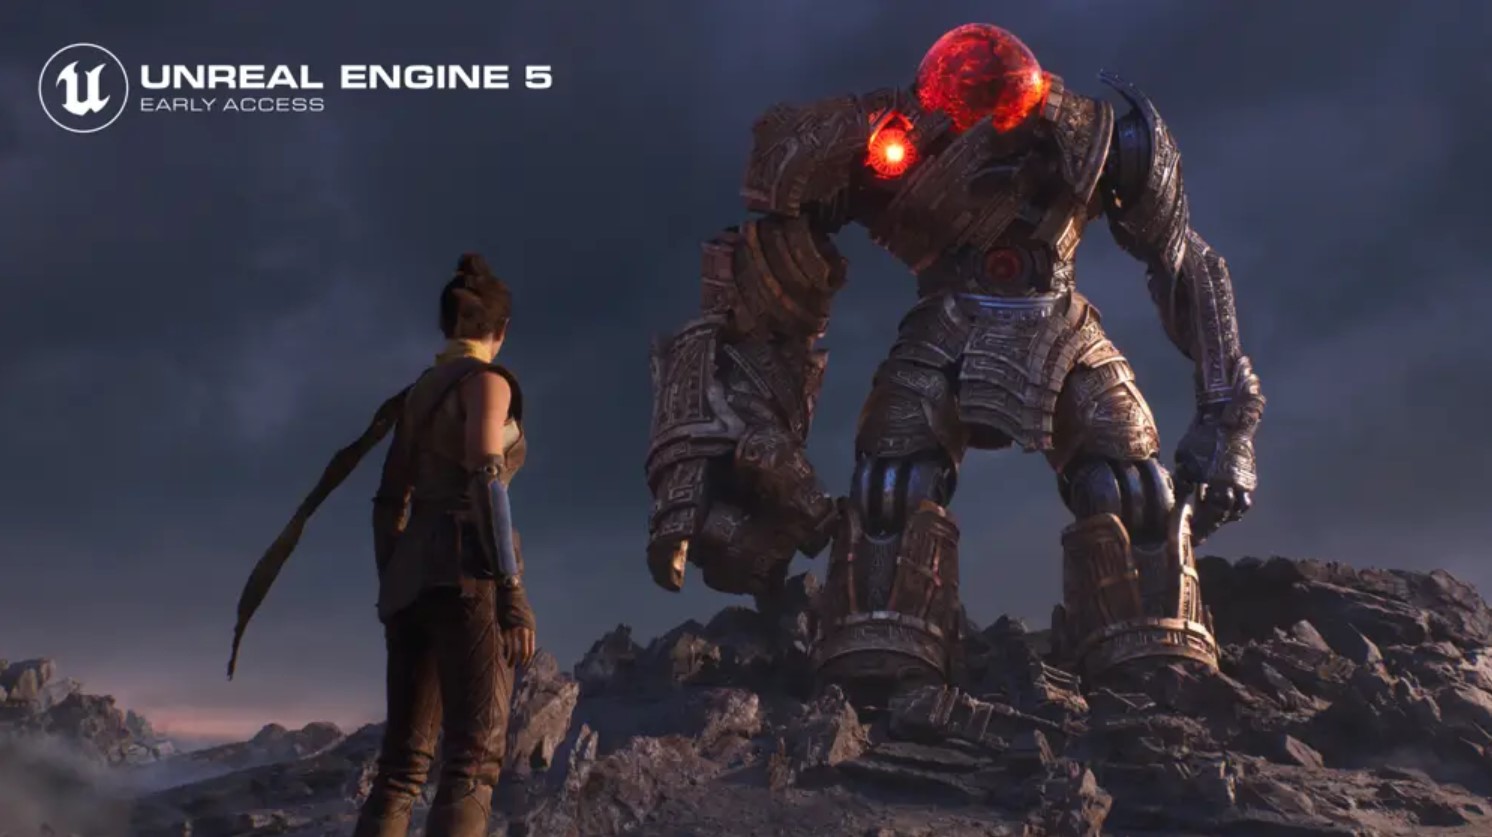 Unreal Engine 5: Διαθέσιμη Early Access για τους προγραμματιστές, υπόσχεται τεράστιο άλμα στα γραφικά